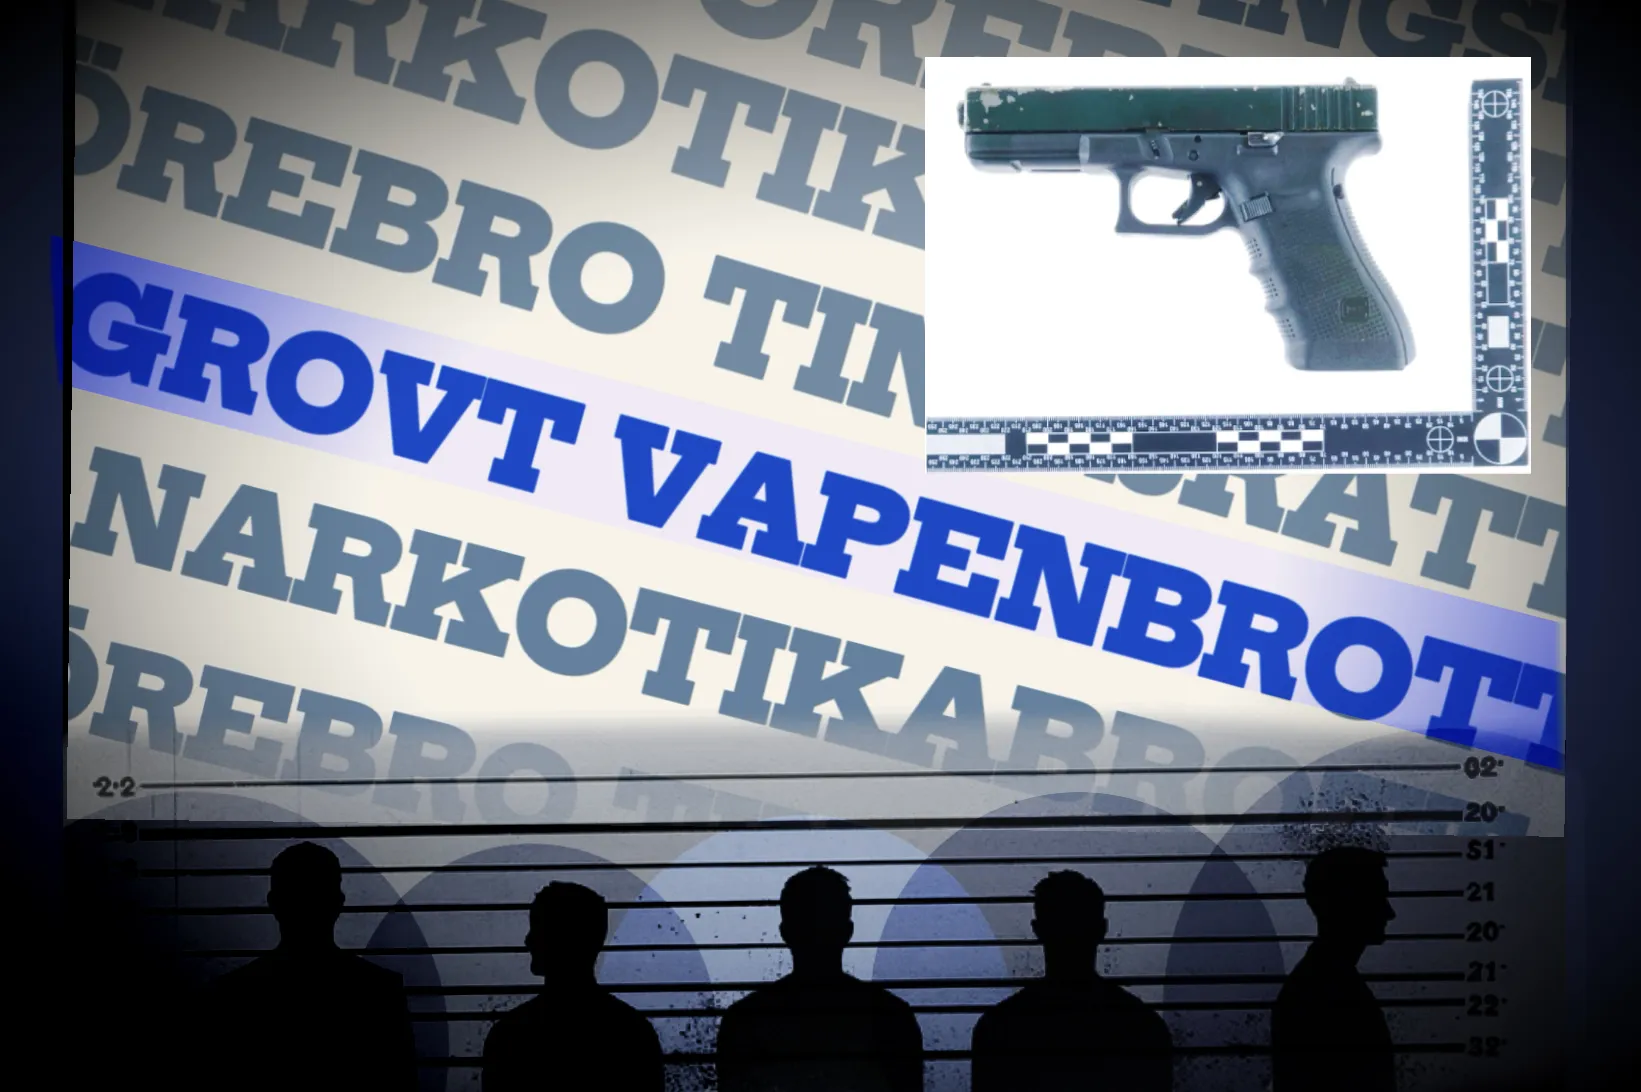 Grovt vapenbrott och narkotikabrott i Adolfsborg, Örebro